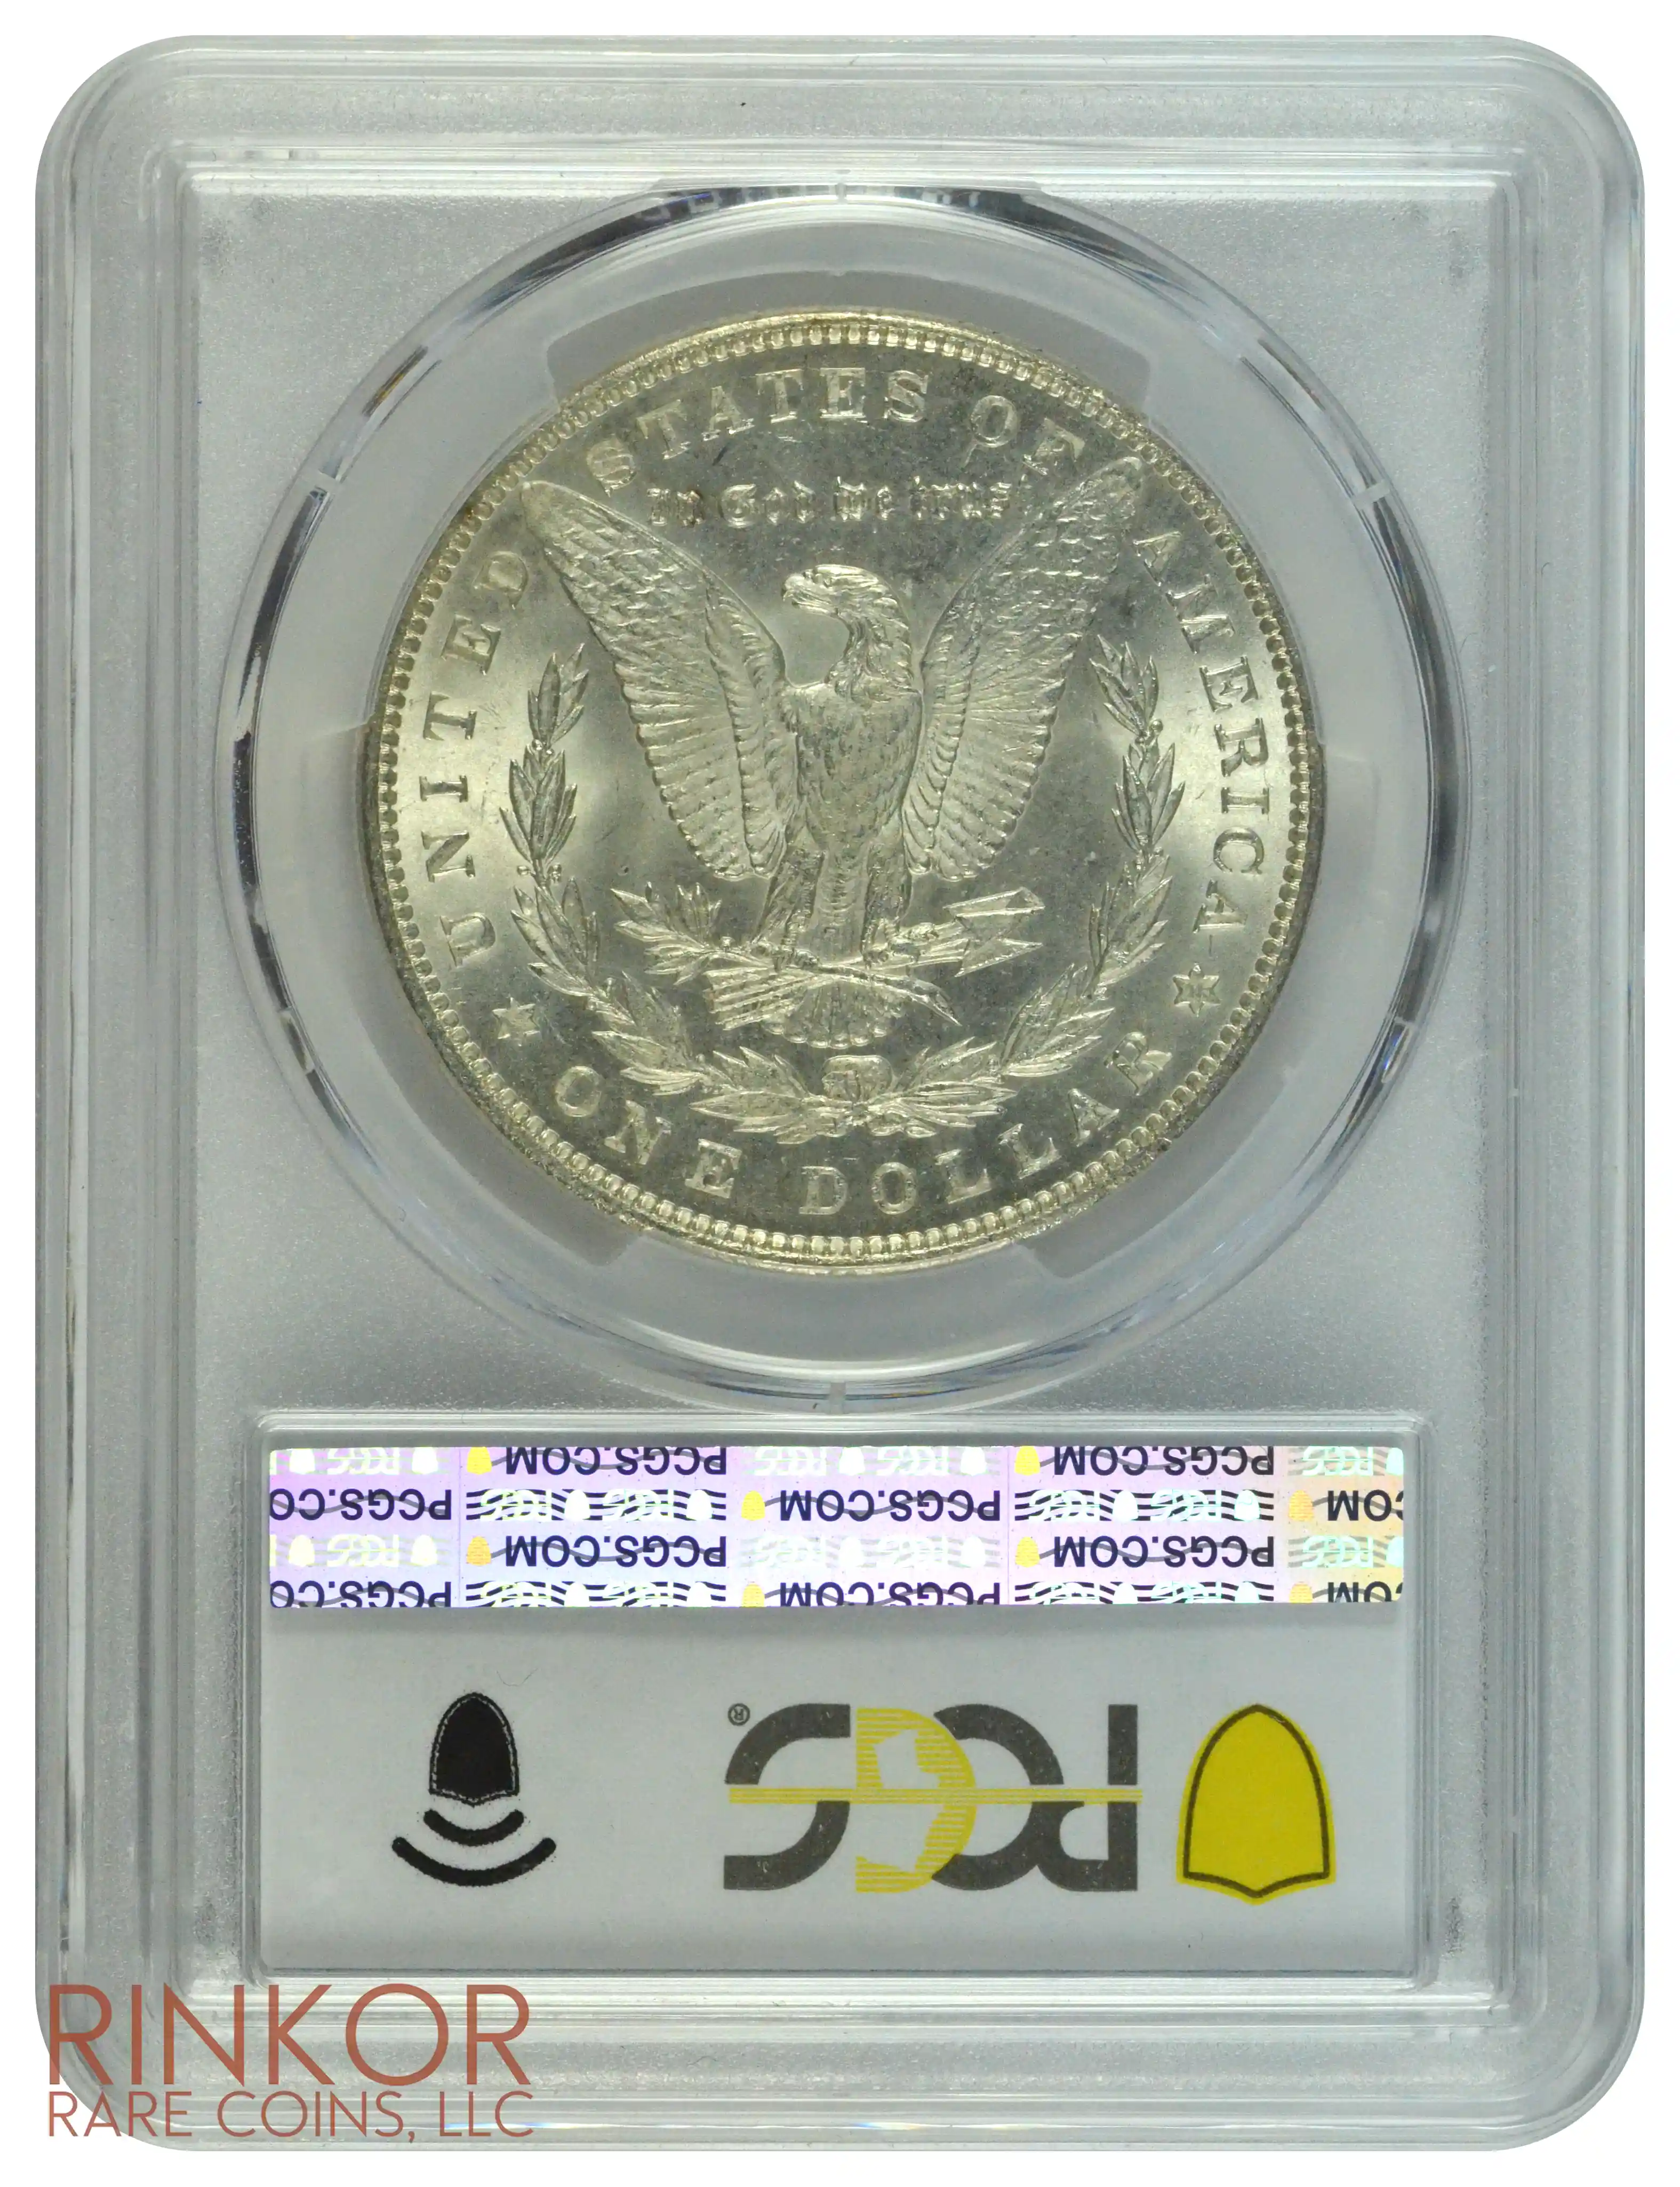 1892 $1 PCGS MS 65